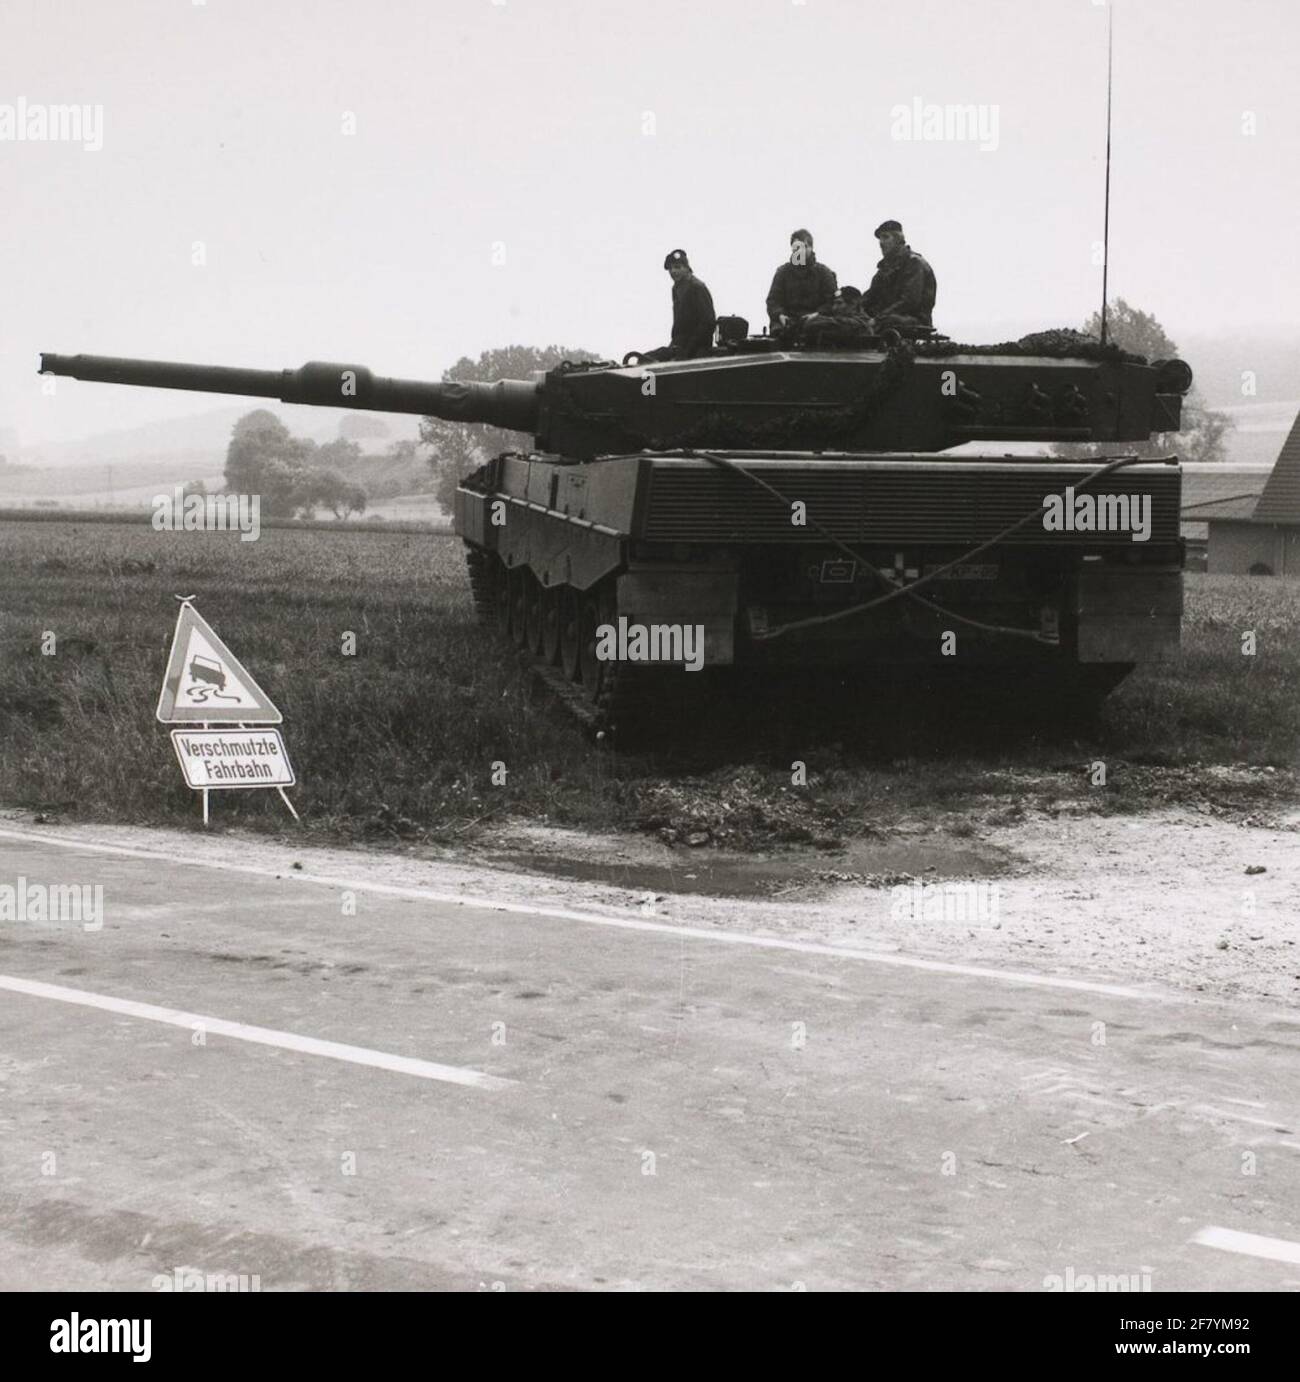 Rückseite eines holländischen Leopard 2 Panzers mit der Kuppel nach links gedreht. Das gekreuzte Abschleppseil am Heck ist gut zu erkennen. Das deutsche Warnschild im Vordergrund warnt vor verschmutzten Straßen (Schlamm e.d) und einer Rutschgefahr. Stockfoto